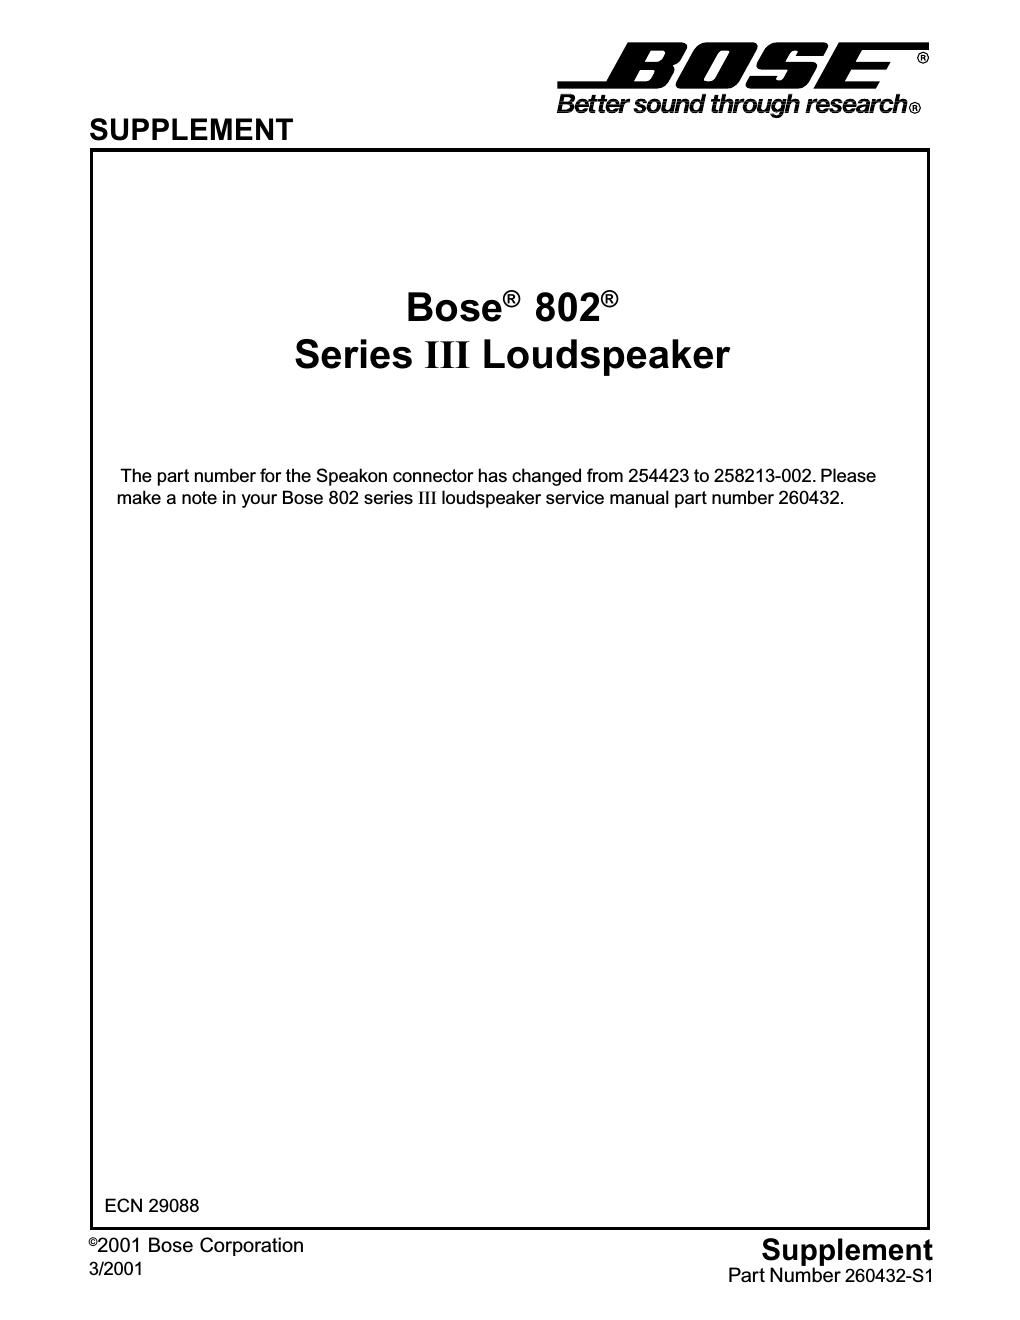 bose 802 iii speaker supplement s1